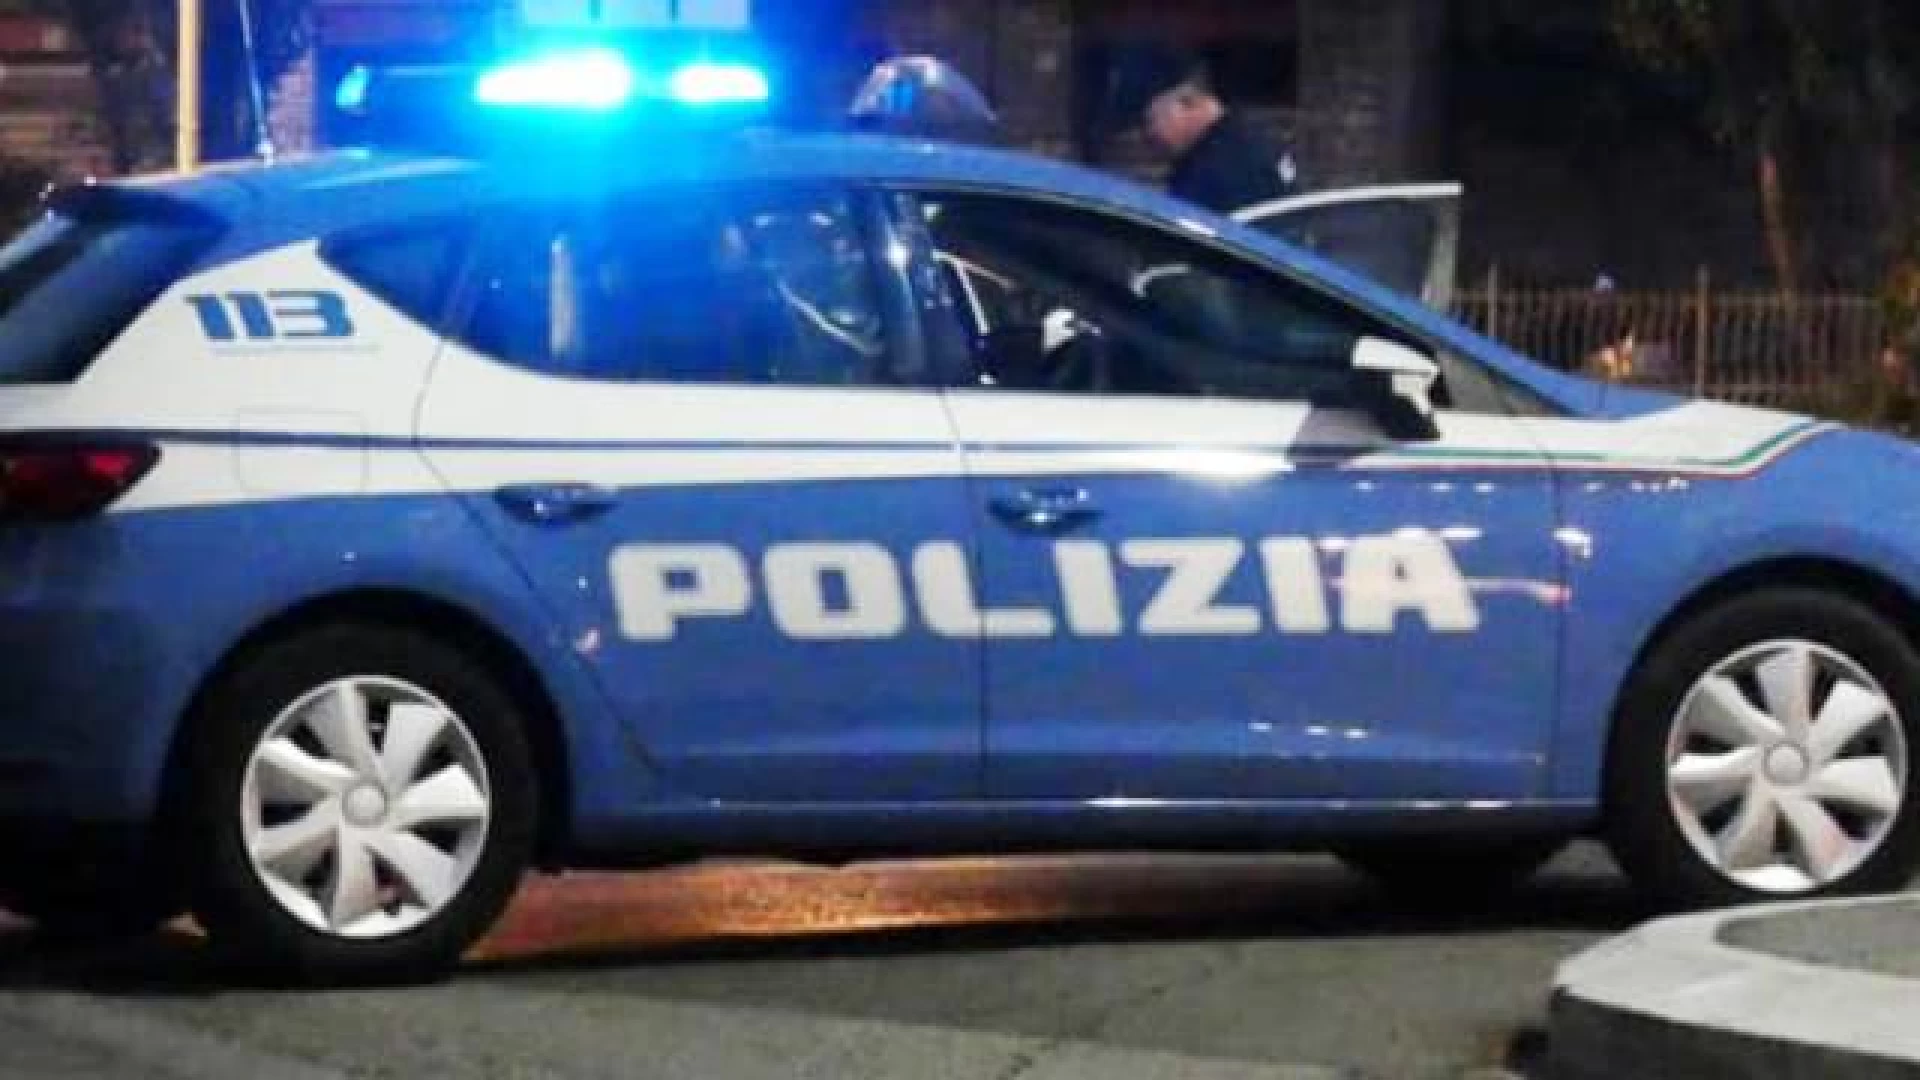 Roccaravindola: folle inseguimento della Polizia all’interno delle strade cittadine. Pare sia stata fermata una Fiat 500.